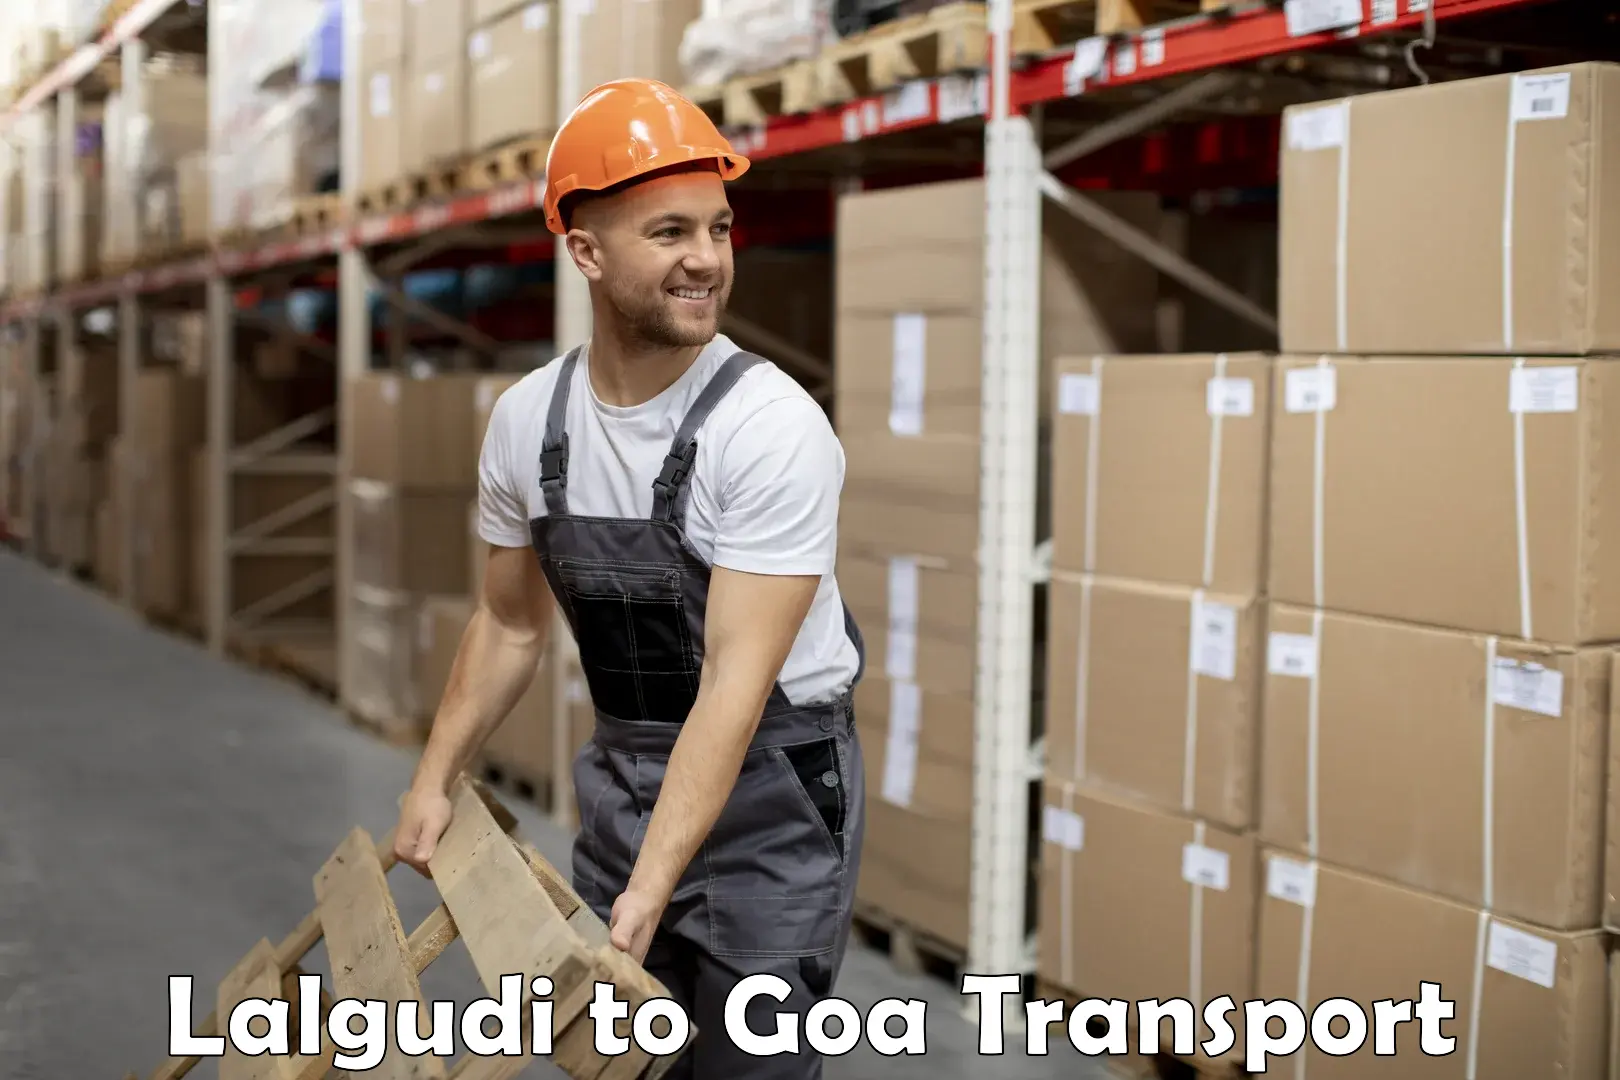 Nearest transport service Lalgudi to Ponda